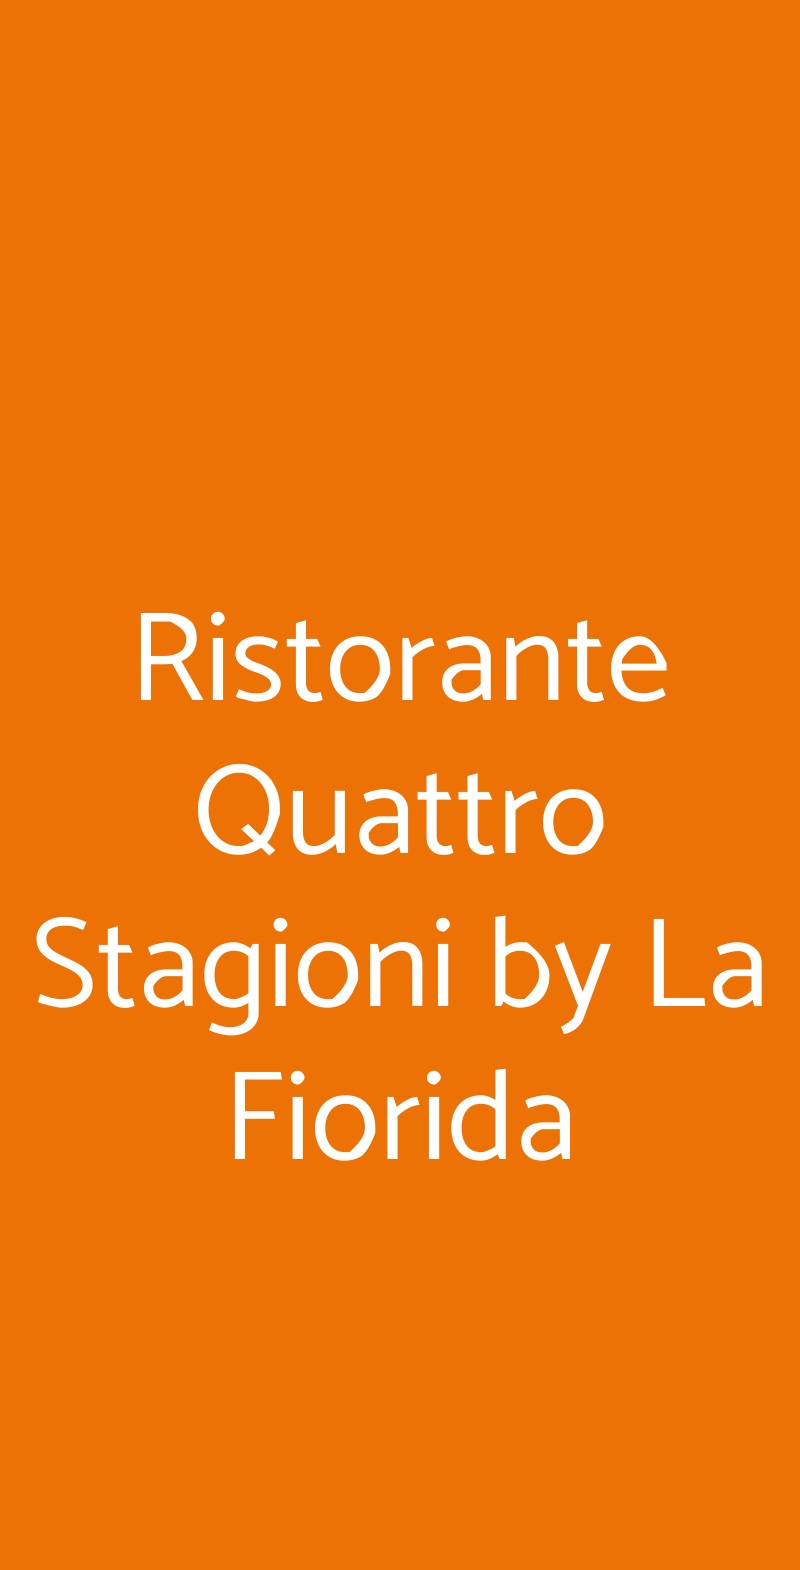 Ristorante Quattro Stagioni by La Fiorida Mantello menù 1 pagina